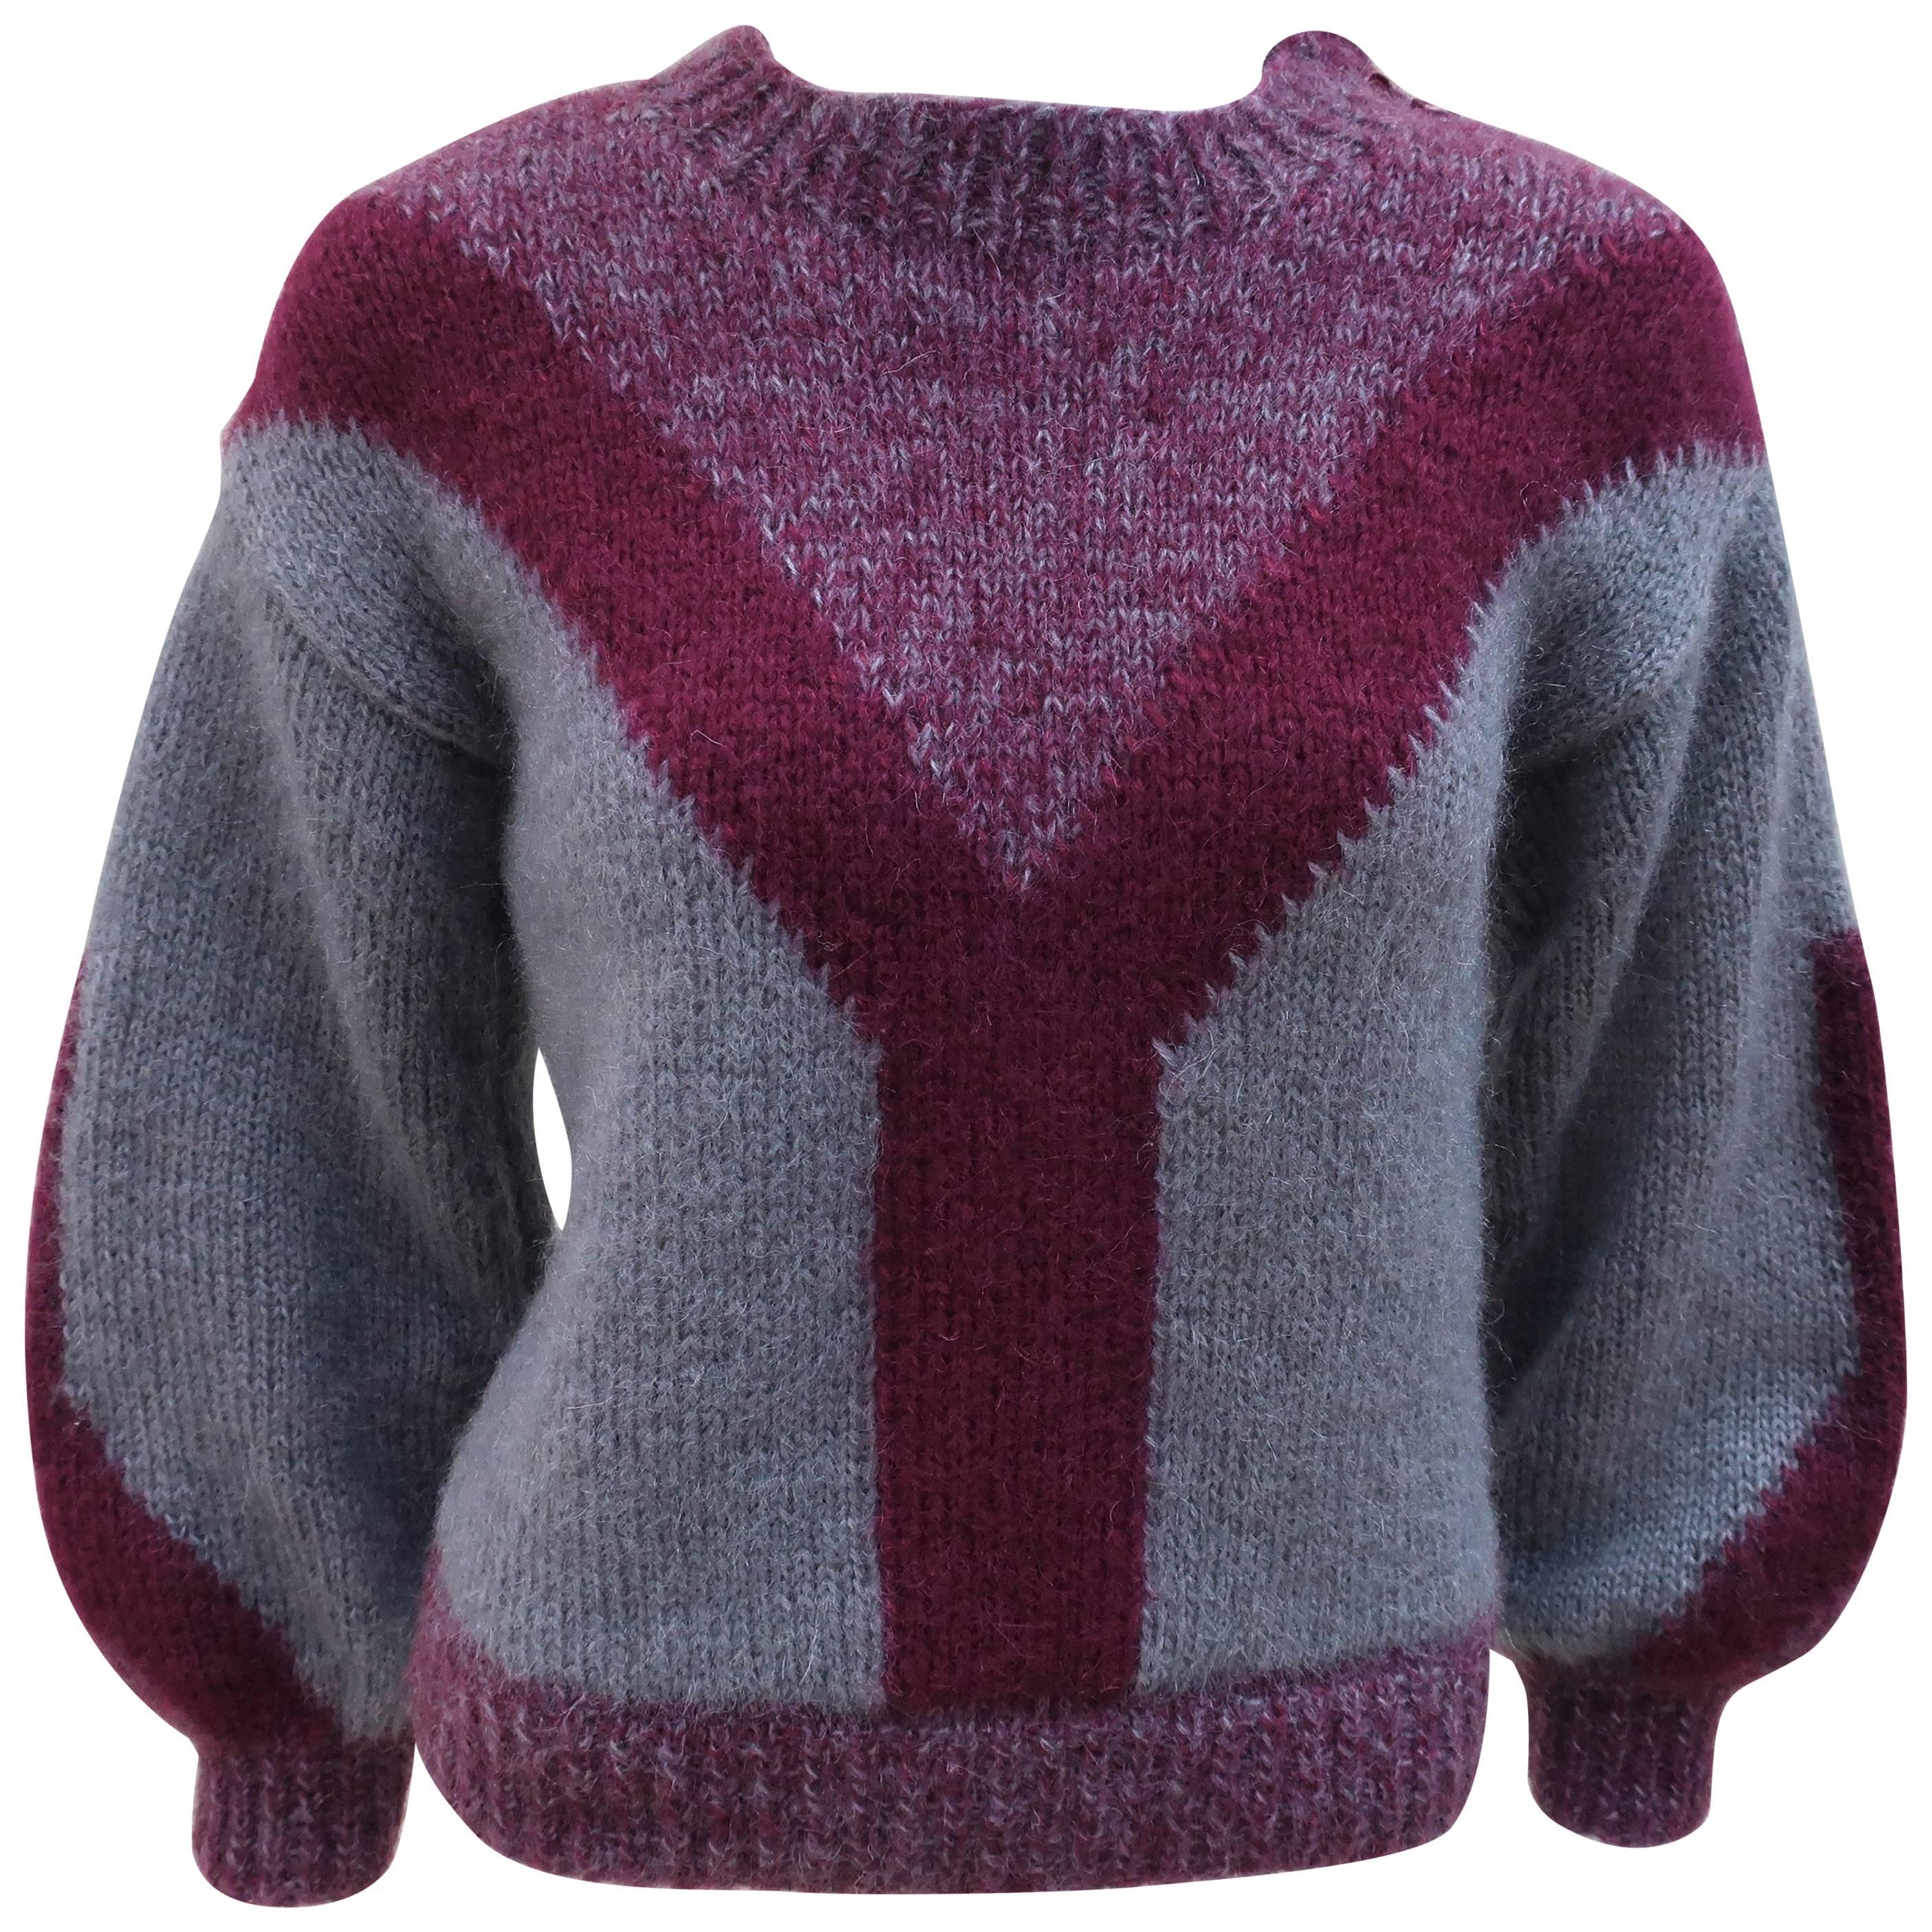 Chunky 1970's Sportswear Style Wool Sweater